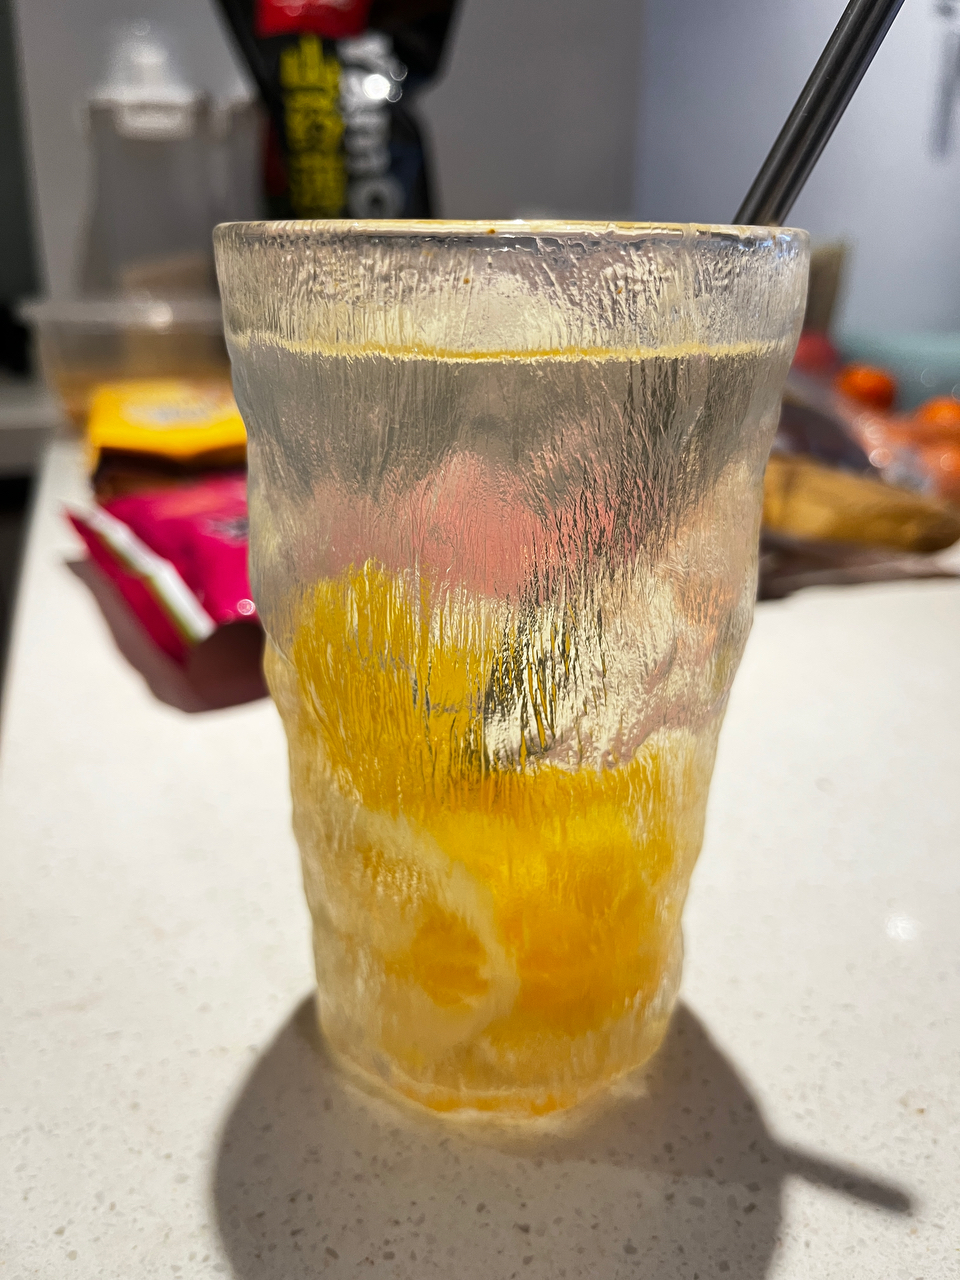 (热搜)冬天除了姜茶还可以来杯橘子水